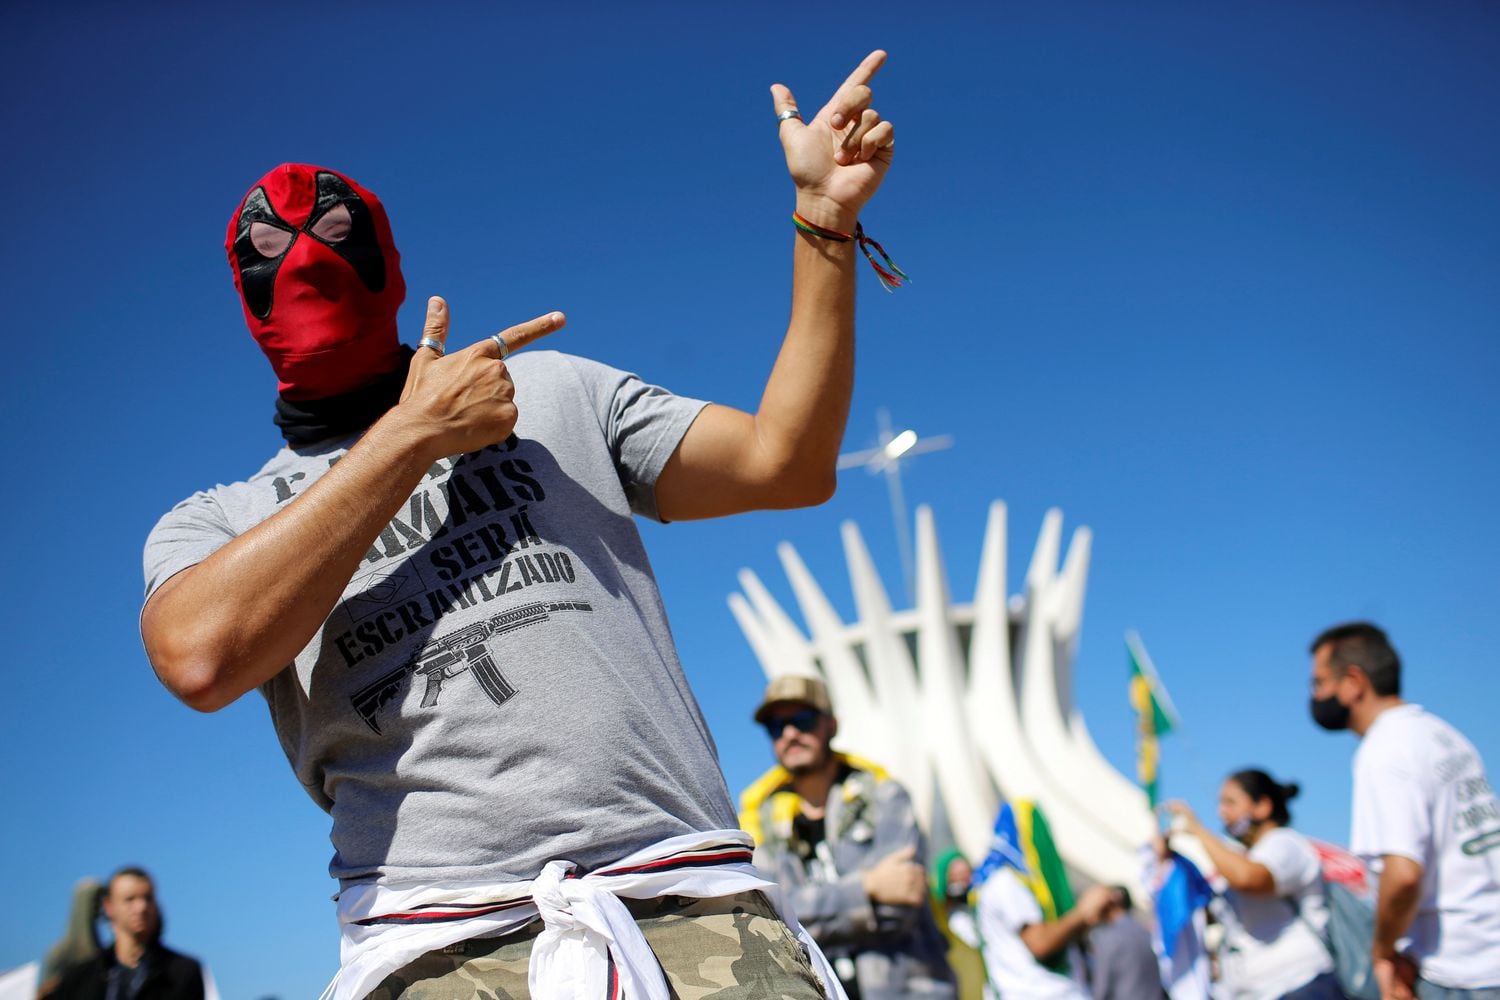 Manifestante pró-armas durante protesto em Brasília, em 9 de julho passado.